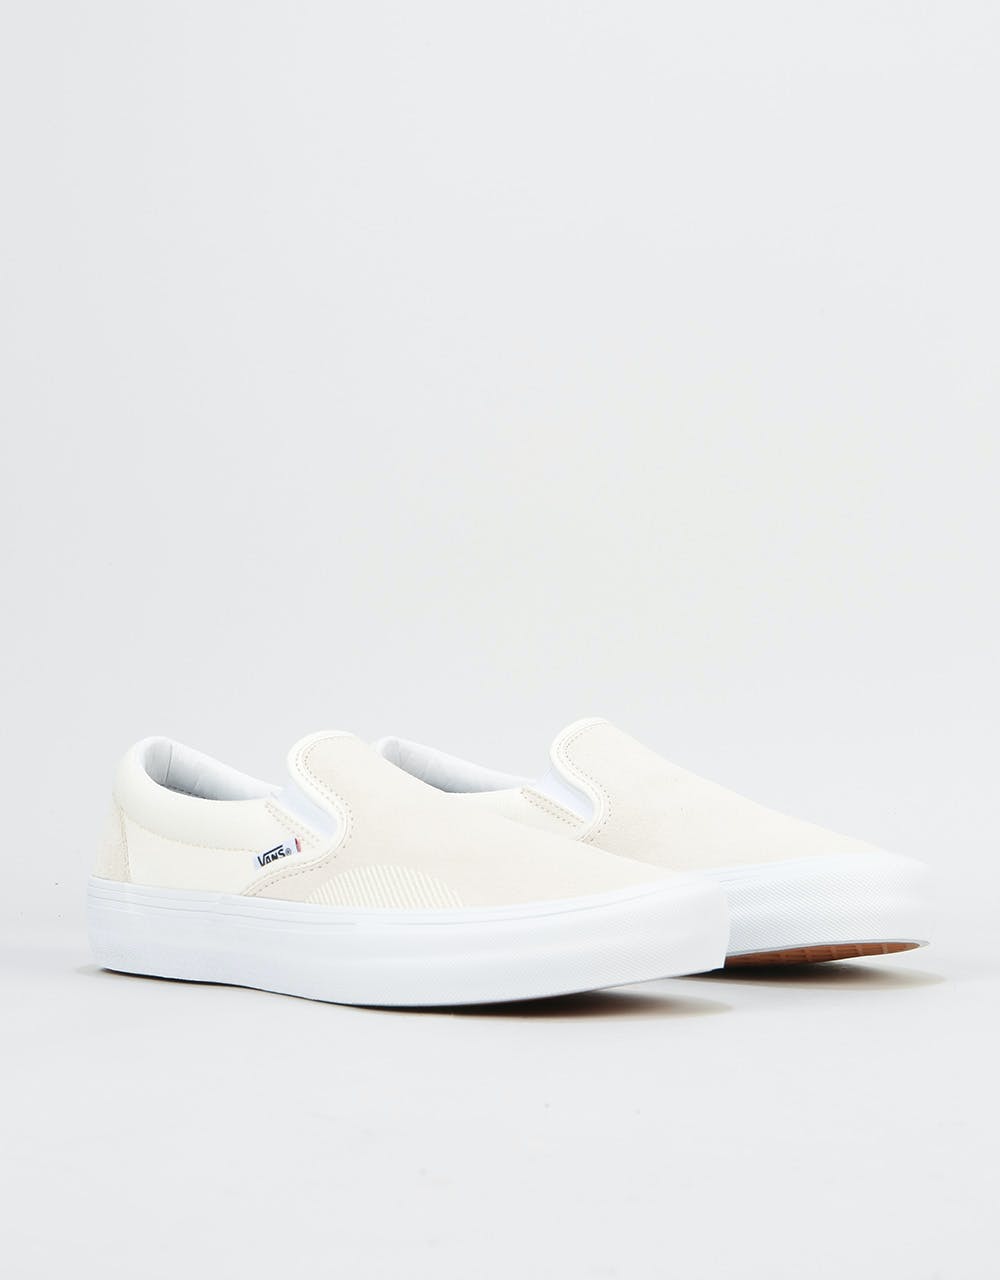 Vans Slip-On Pro Skate Shoes - (Rubber Print) Marshmallow